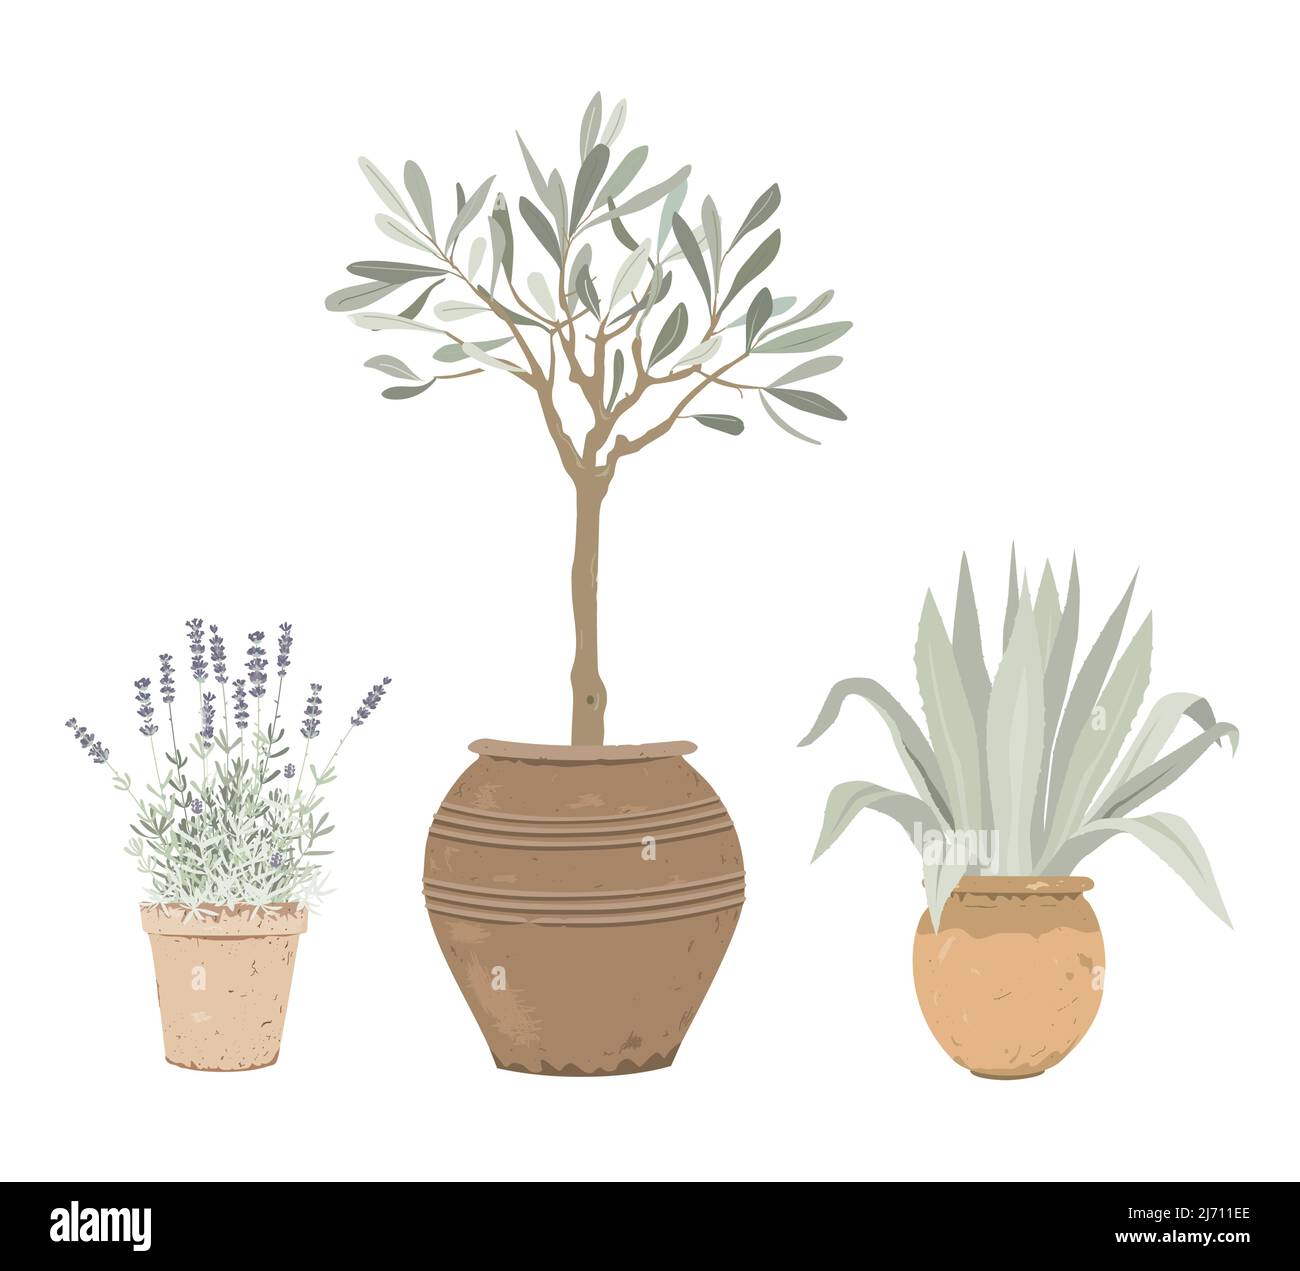 Set von mediterranen Topfpflanzen. Lavendel, Olivenbaum und blaue Agave in Blumentöpfen. Designelemente für Garten- oder Wohnkultur. Stock Vektor